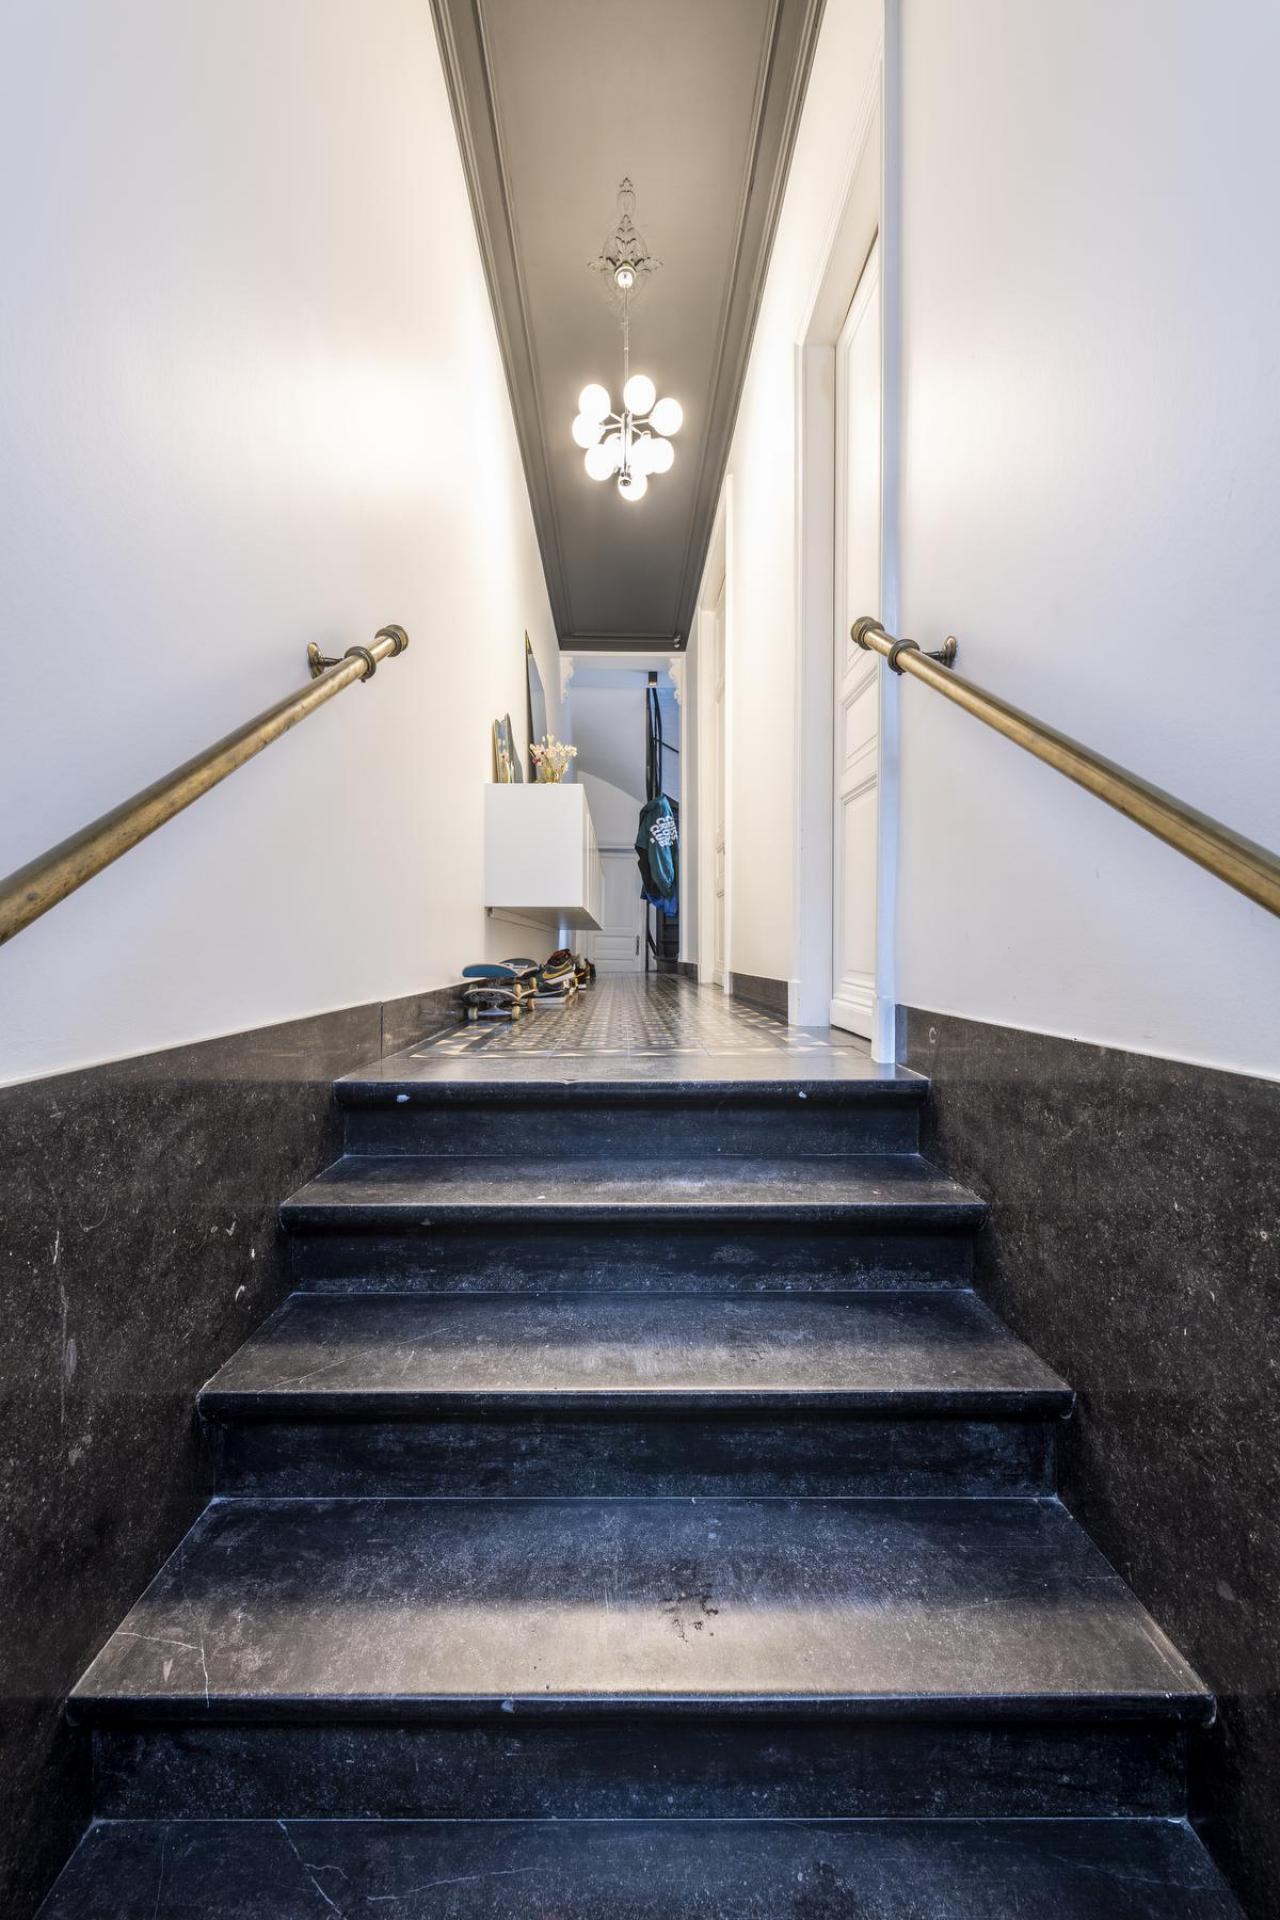 De statige marmeren trap straalt grandeur uit.© Pieter Clicteur